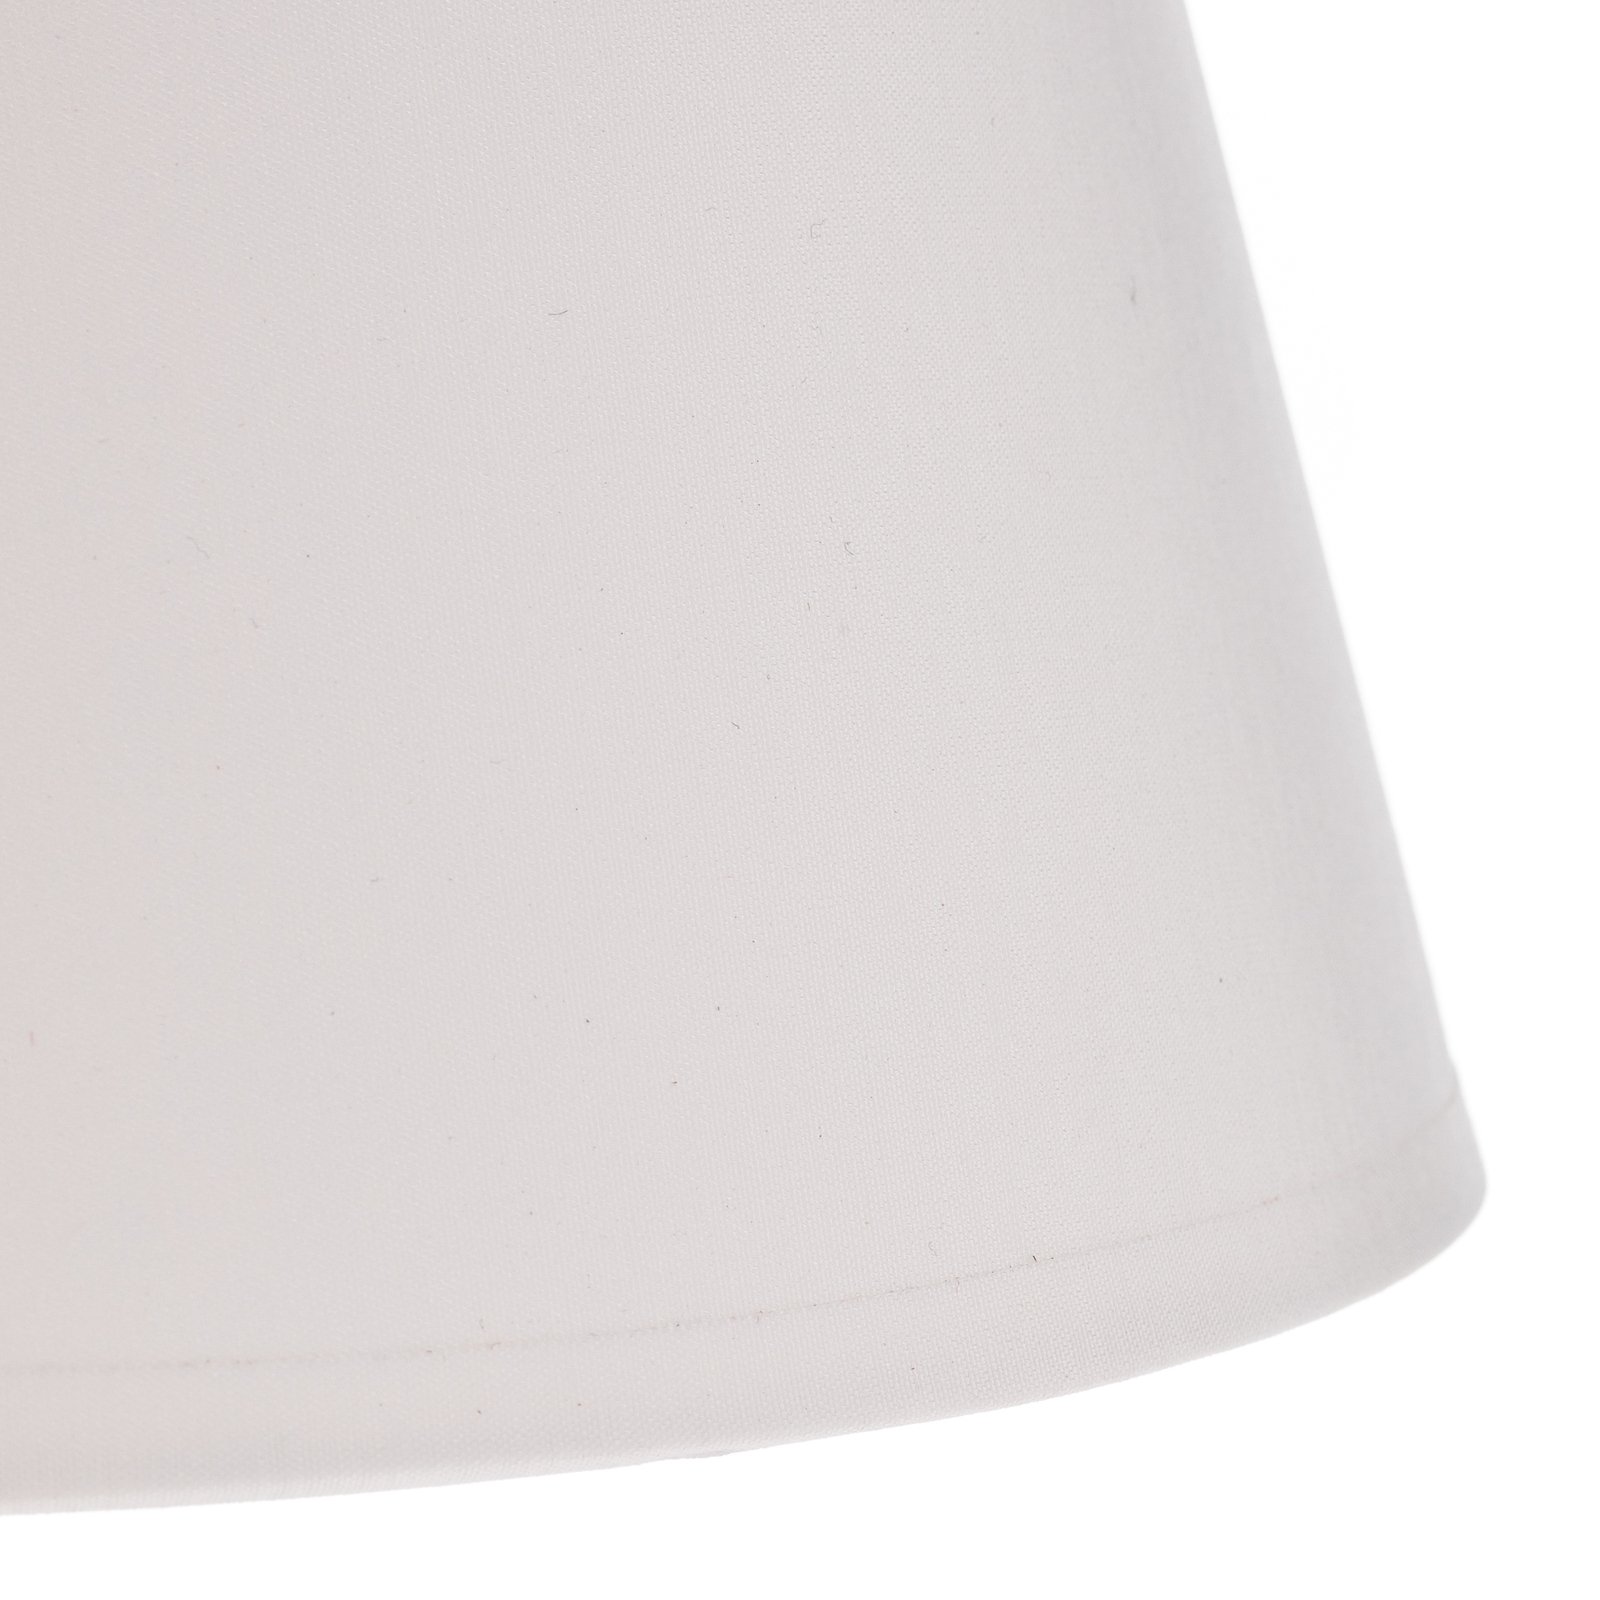 Lampada da tavolo Soho, cono altezza 33 cm, bianco